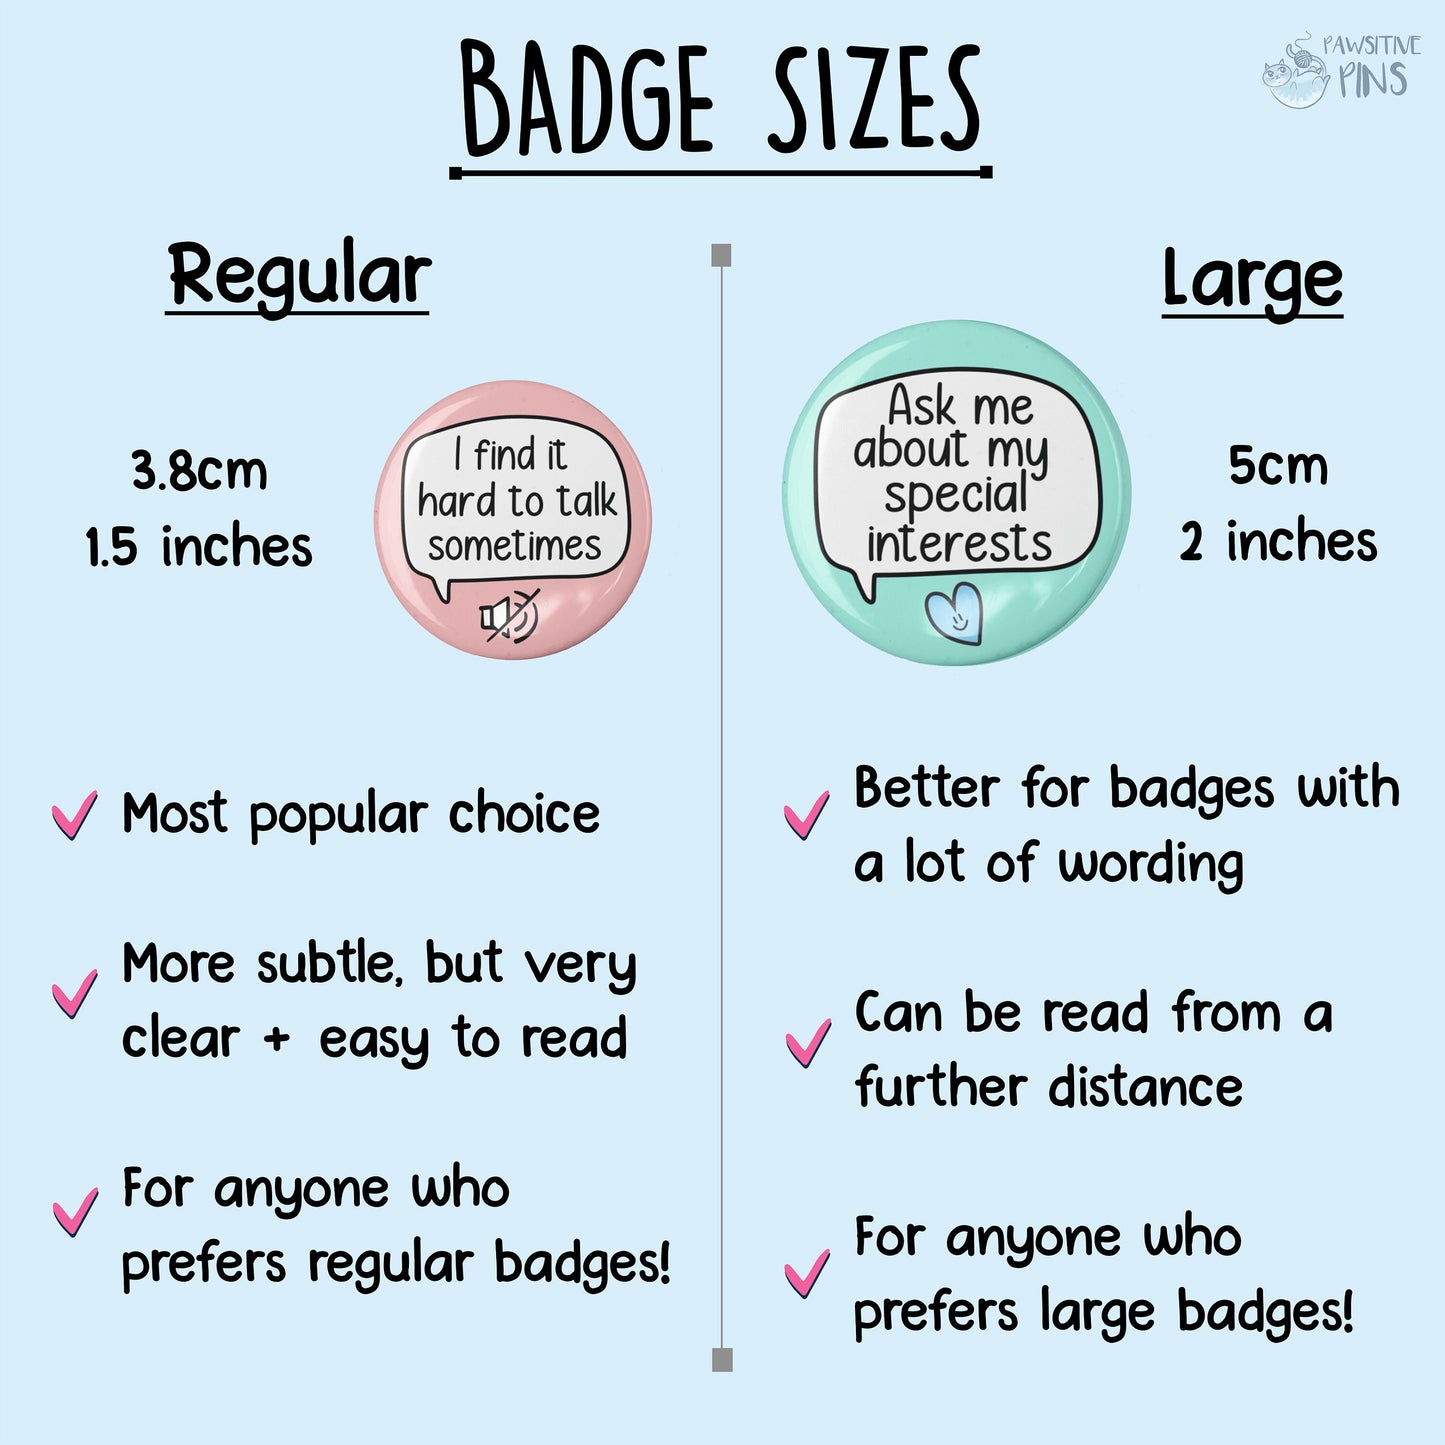 Custom Speech Badge Pin |  Please Read Description & Check photos